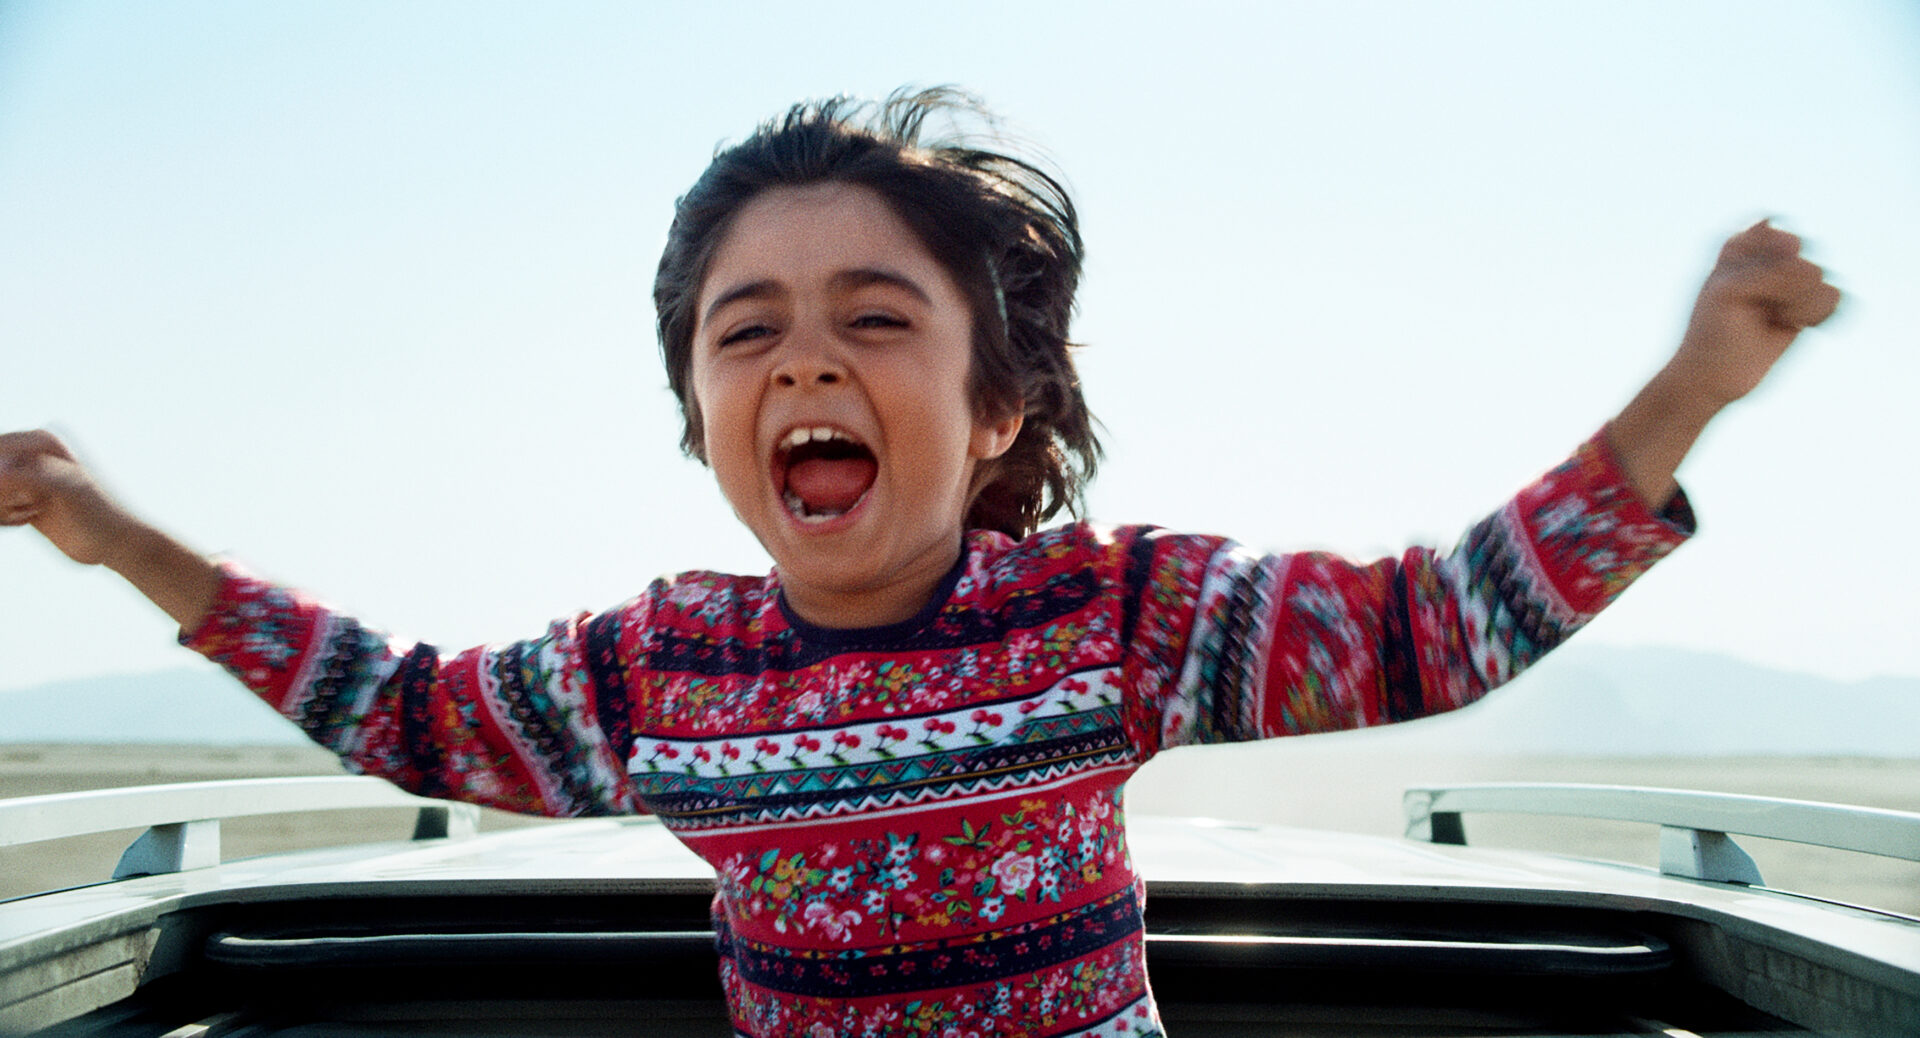 Die zuckersüsse Nervensäge: der kleine Sohn (Rayan Sarlak) begreift den Ernst der Familienreise noch nicht